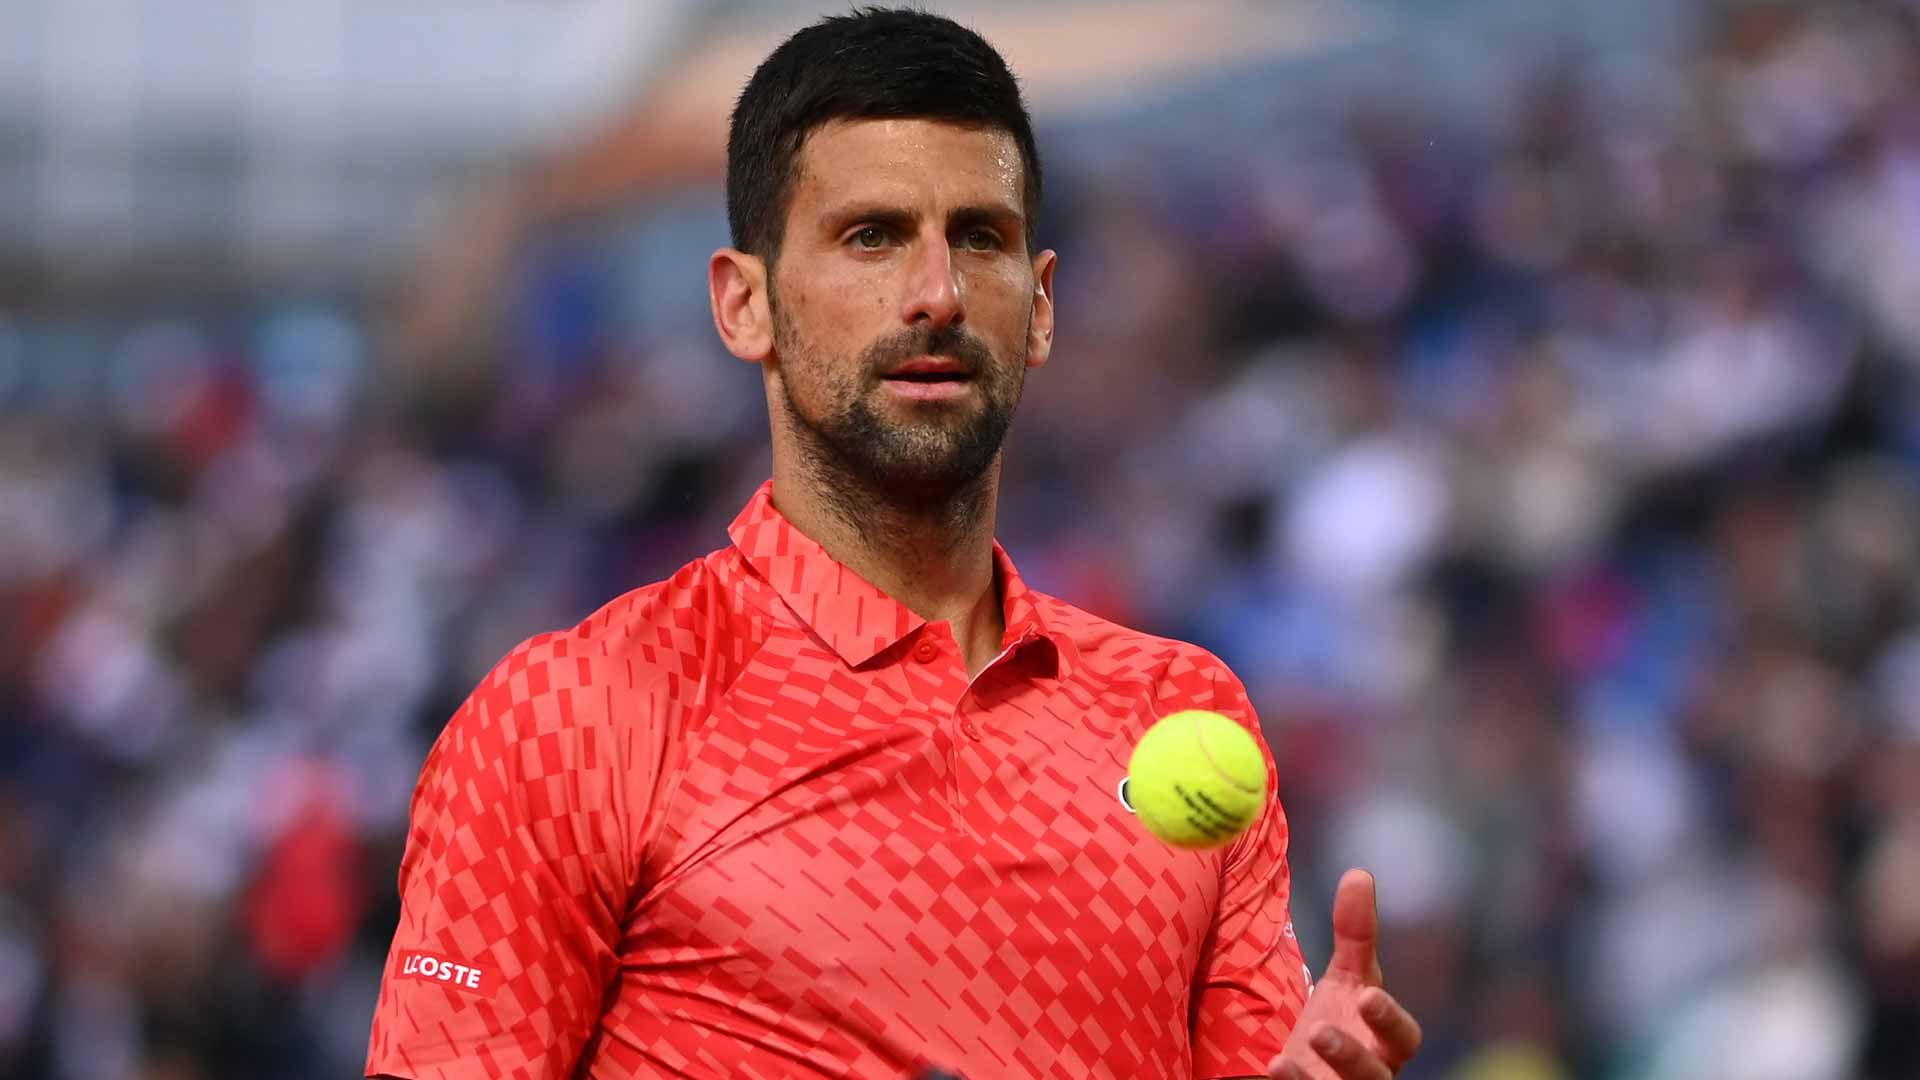 Novak Djokovic is 17-3 in 2023.